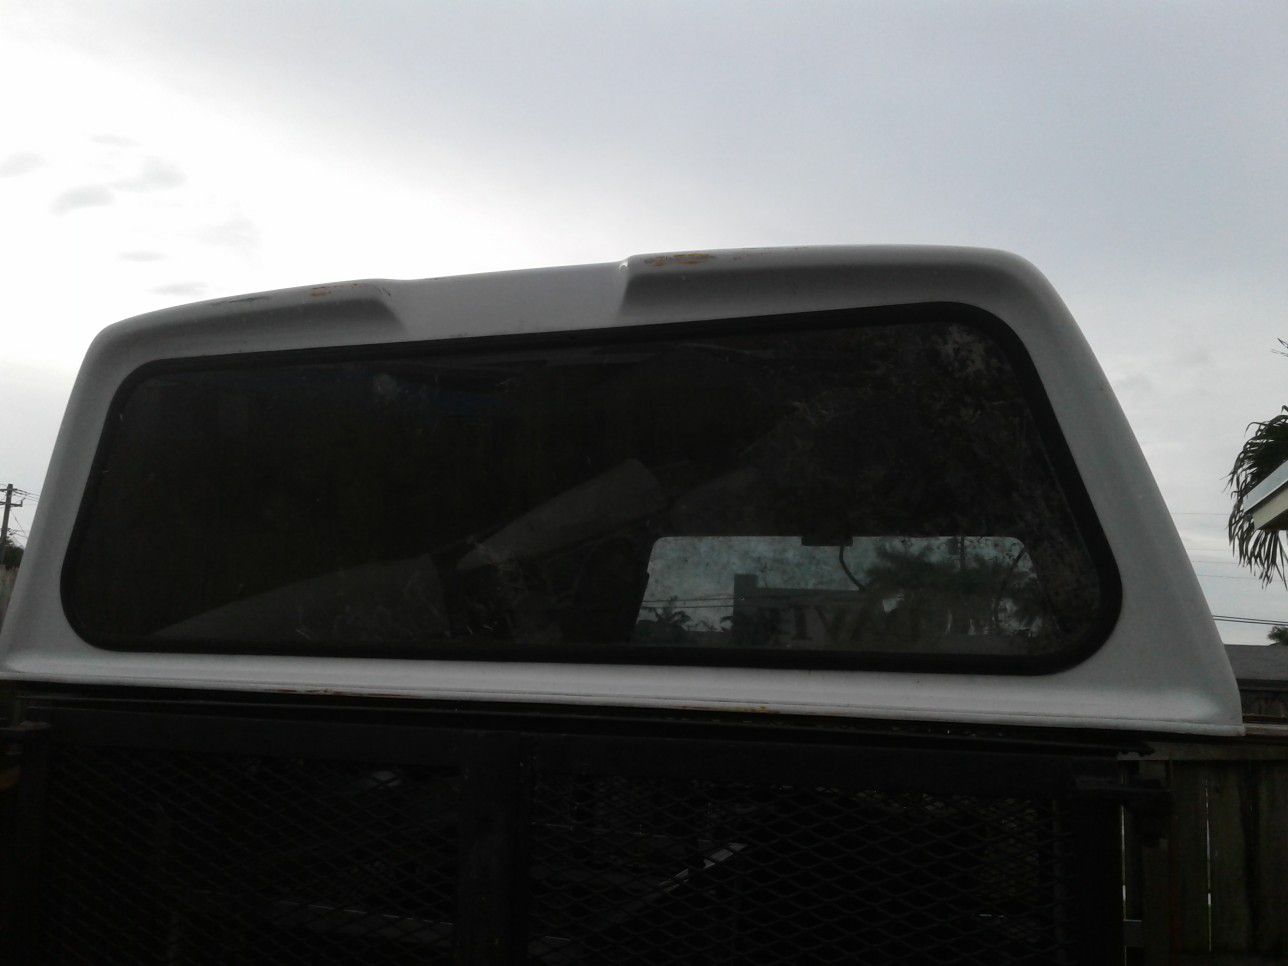 Pick-up truck camper topper